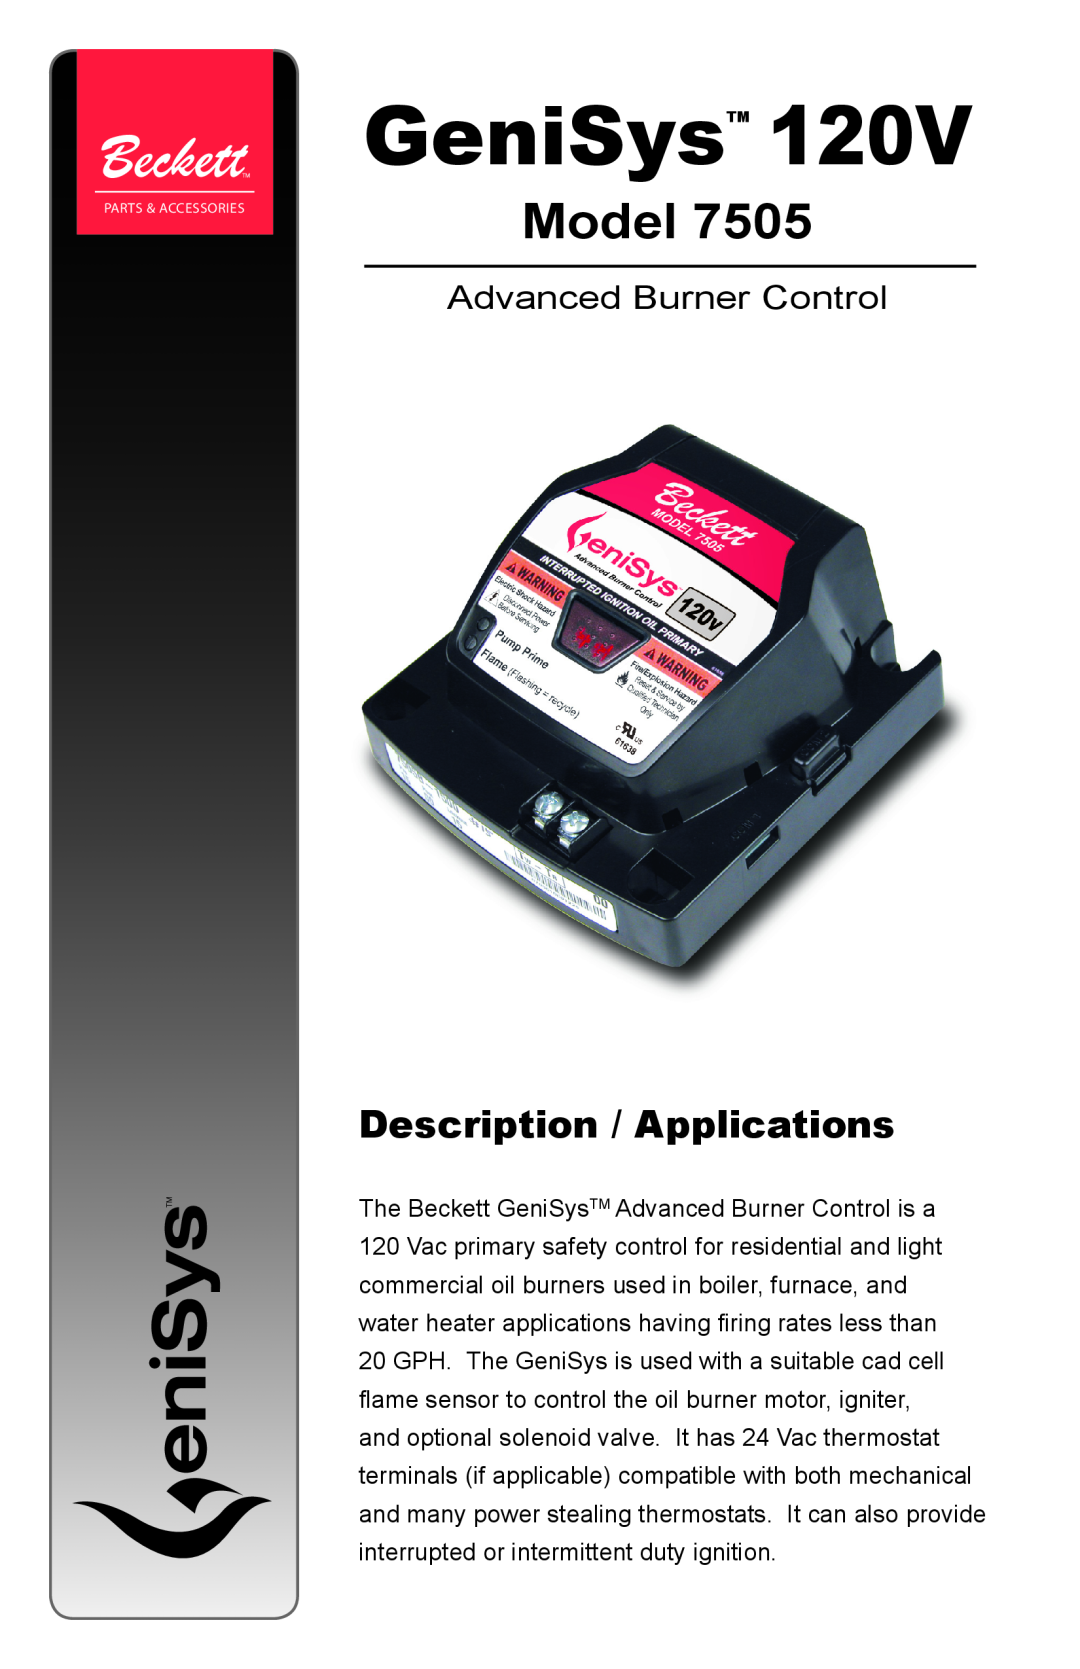 Beckett Model 7505 manual Description / Applications, GeniSys, Advanced Burner Control 